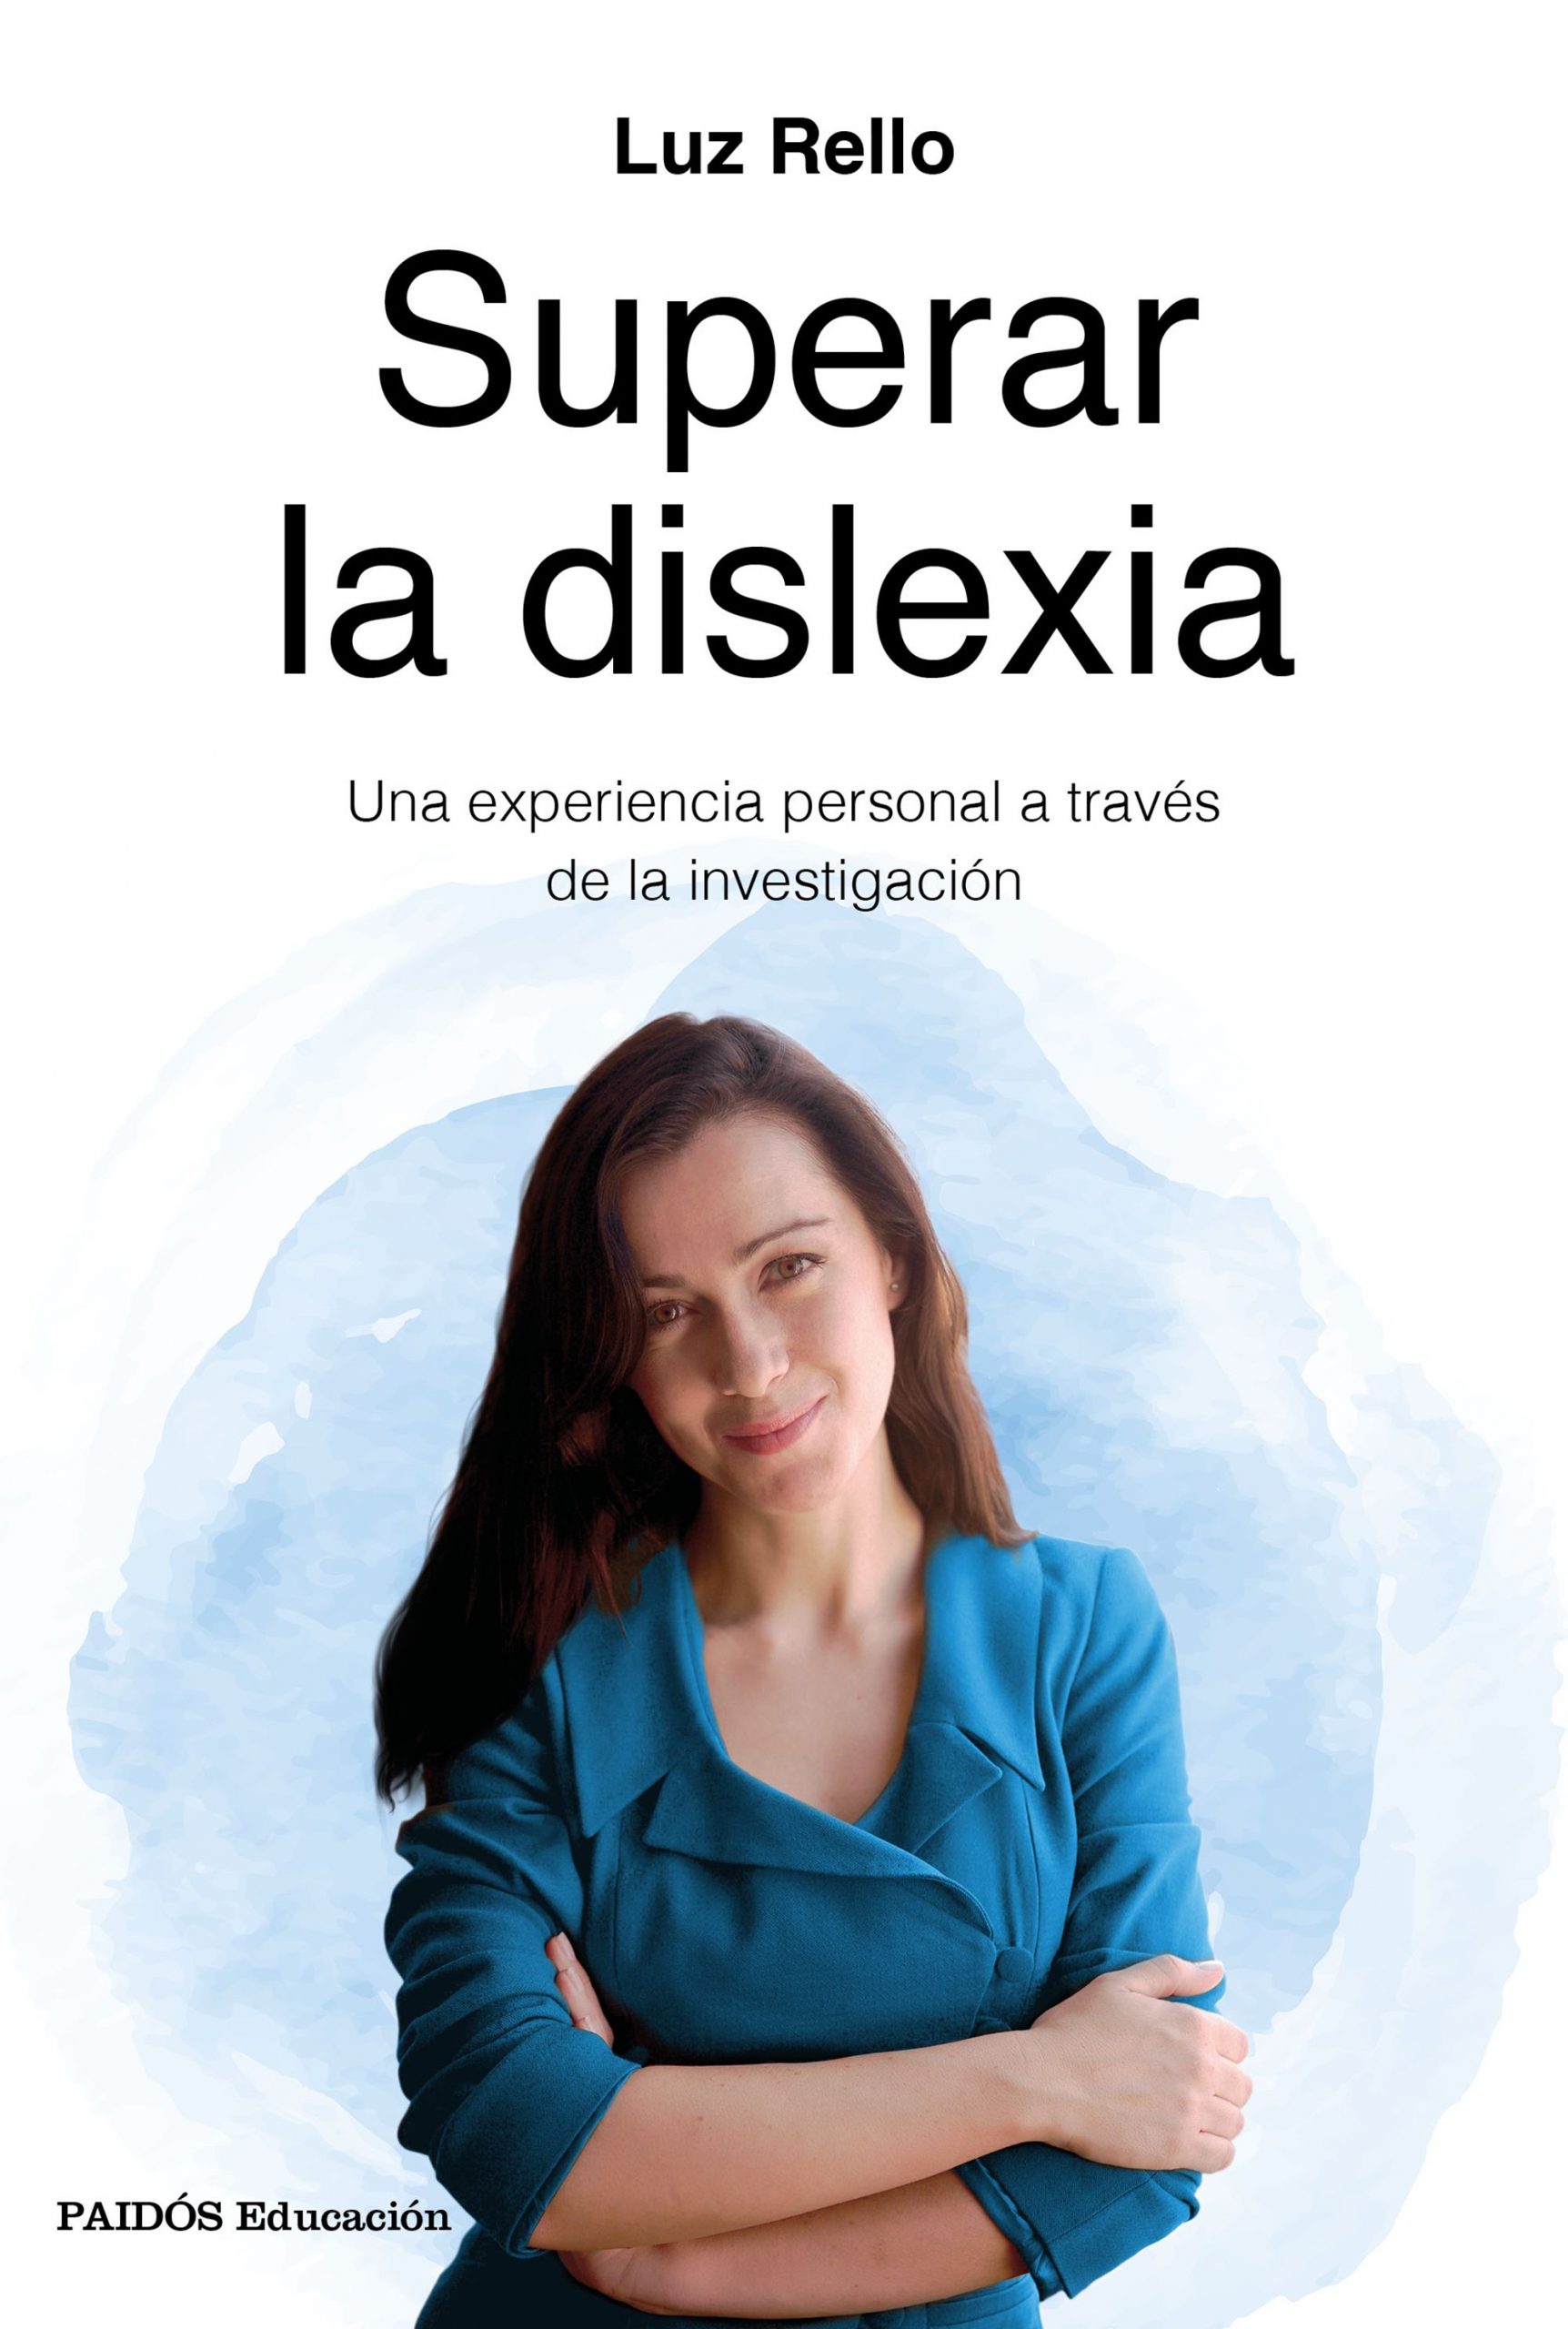 La dislexia es una dificultad de aprendizaje, no una enfermedad. Luz Rello en El País (Aprendemos Juntos)